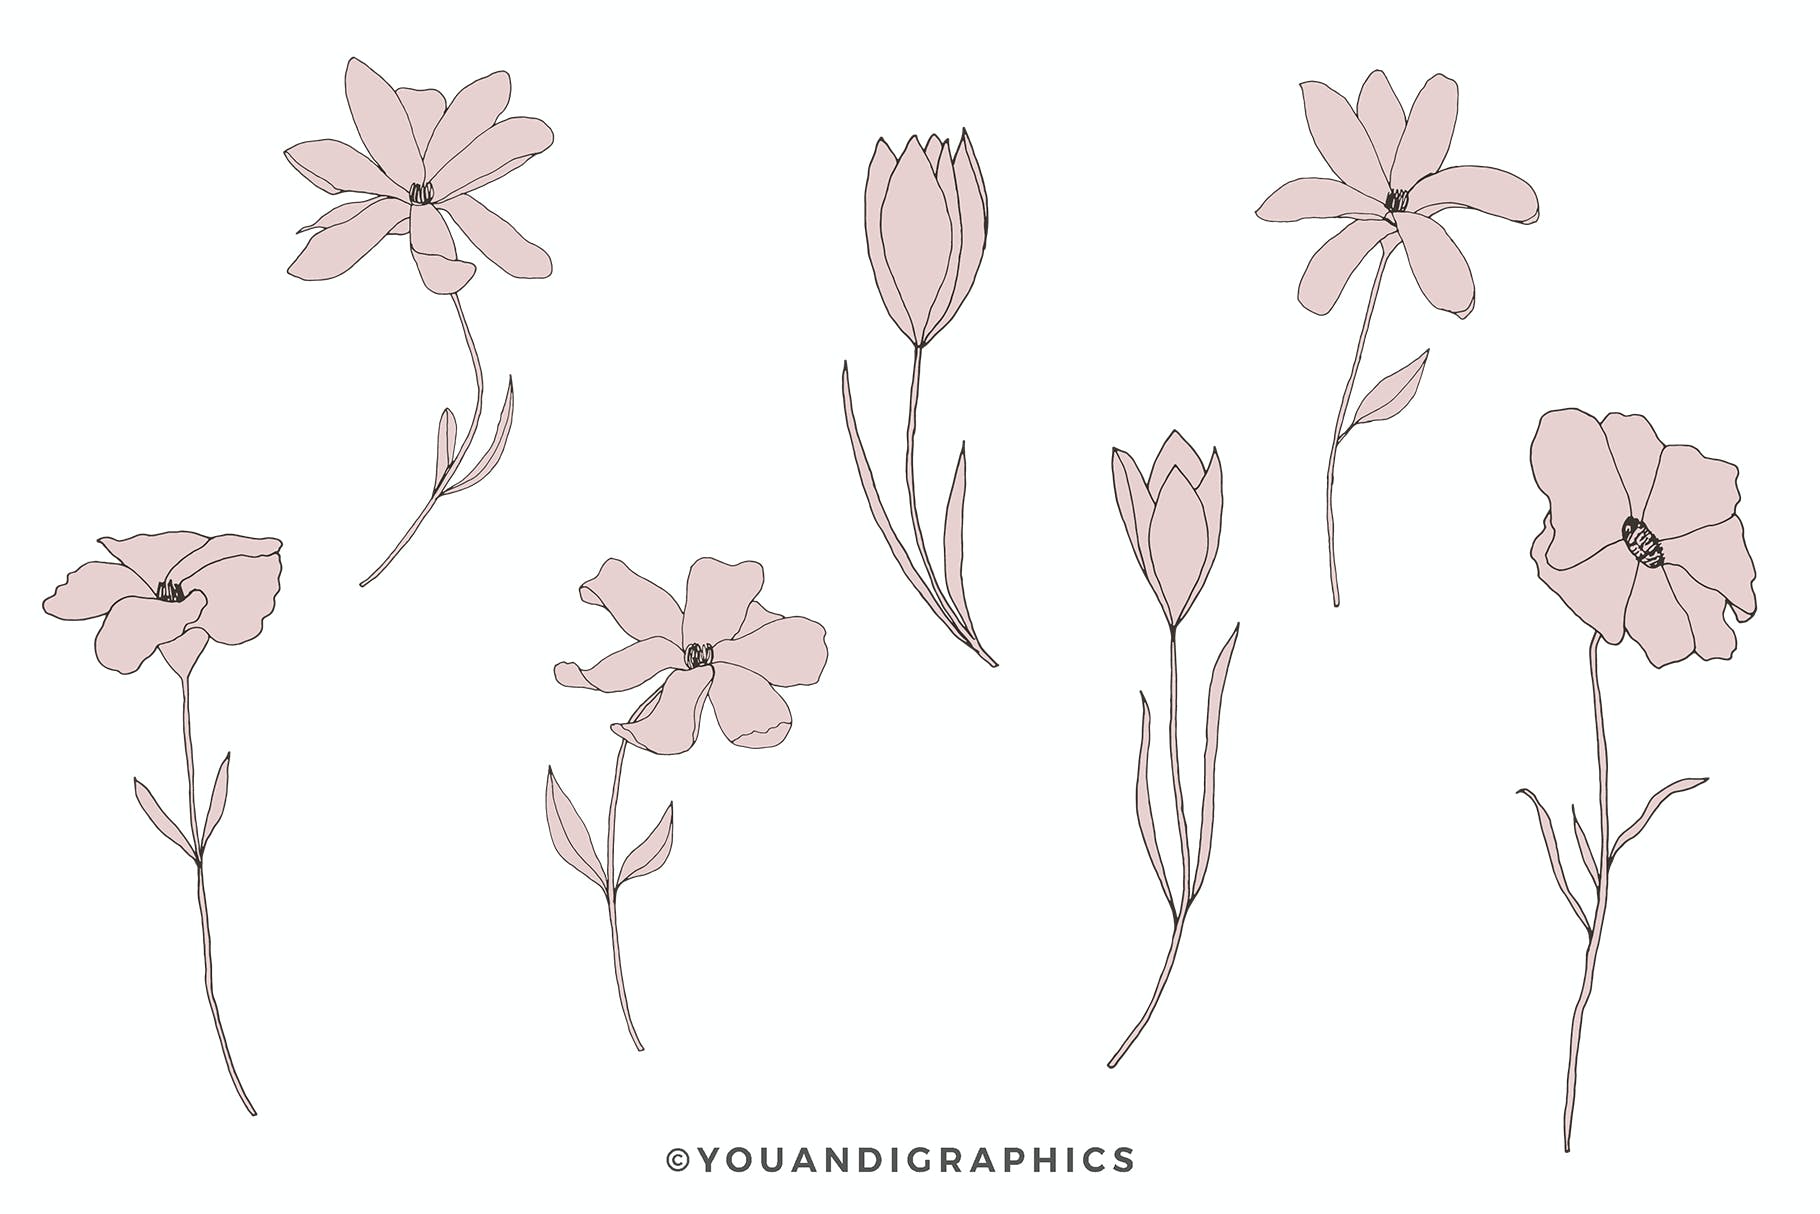 精美的花卉图案和元素 Dainty Floral Patterns & Elements 图片素材 第12张